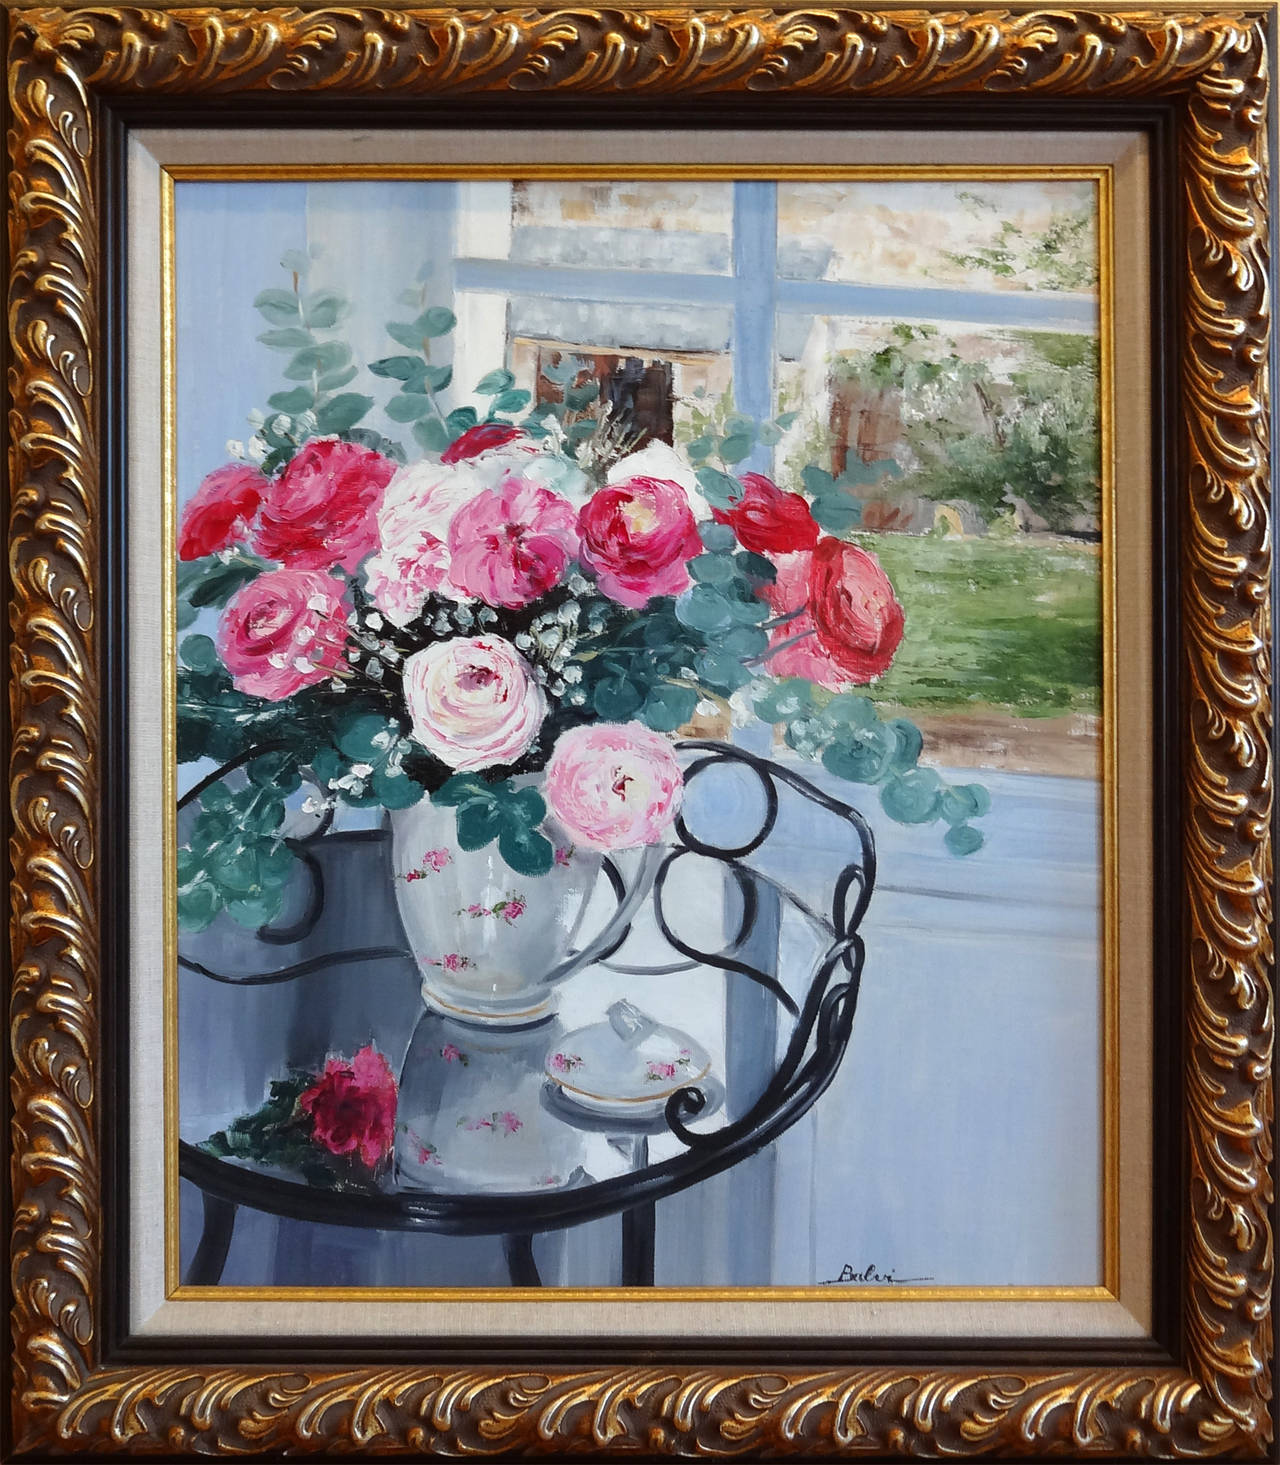 The bouquet in front of the window (Le Bouquet Devant la Fenetre) – Painting von Simone Balvi